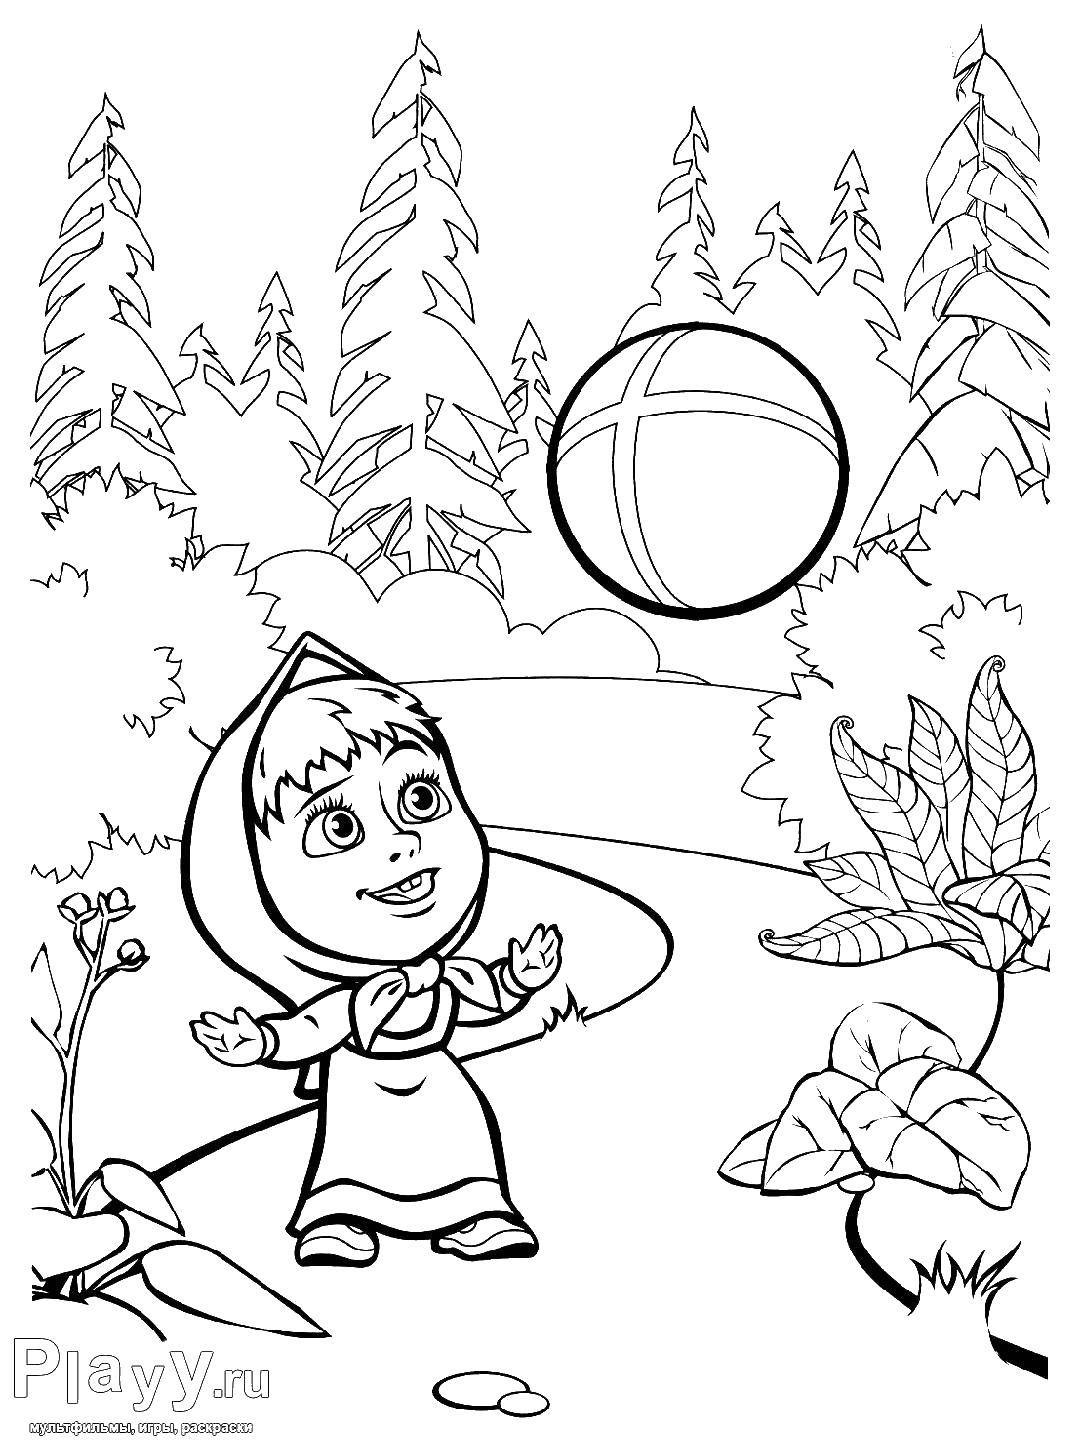 Раскраски для детей про озорную Машу из мультфильма Маша и медведь  Маша играет с мячом